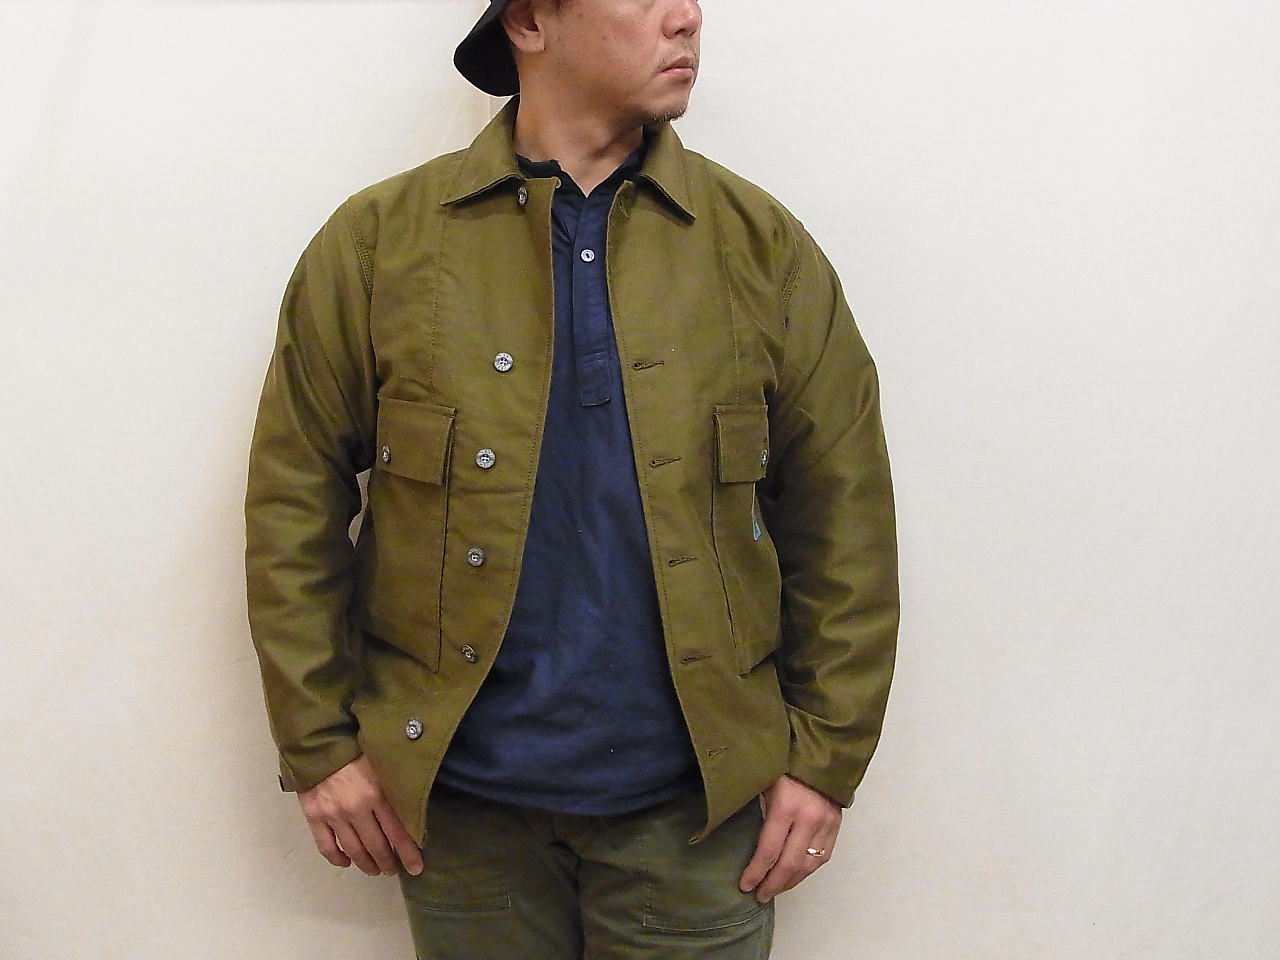 【新品】NIGELCABOURN × LYBRO  USMC シャツジャケット